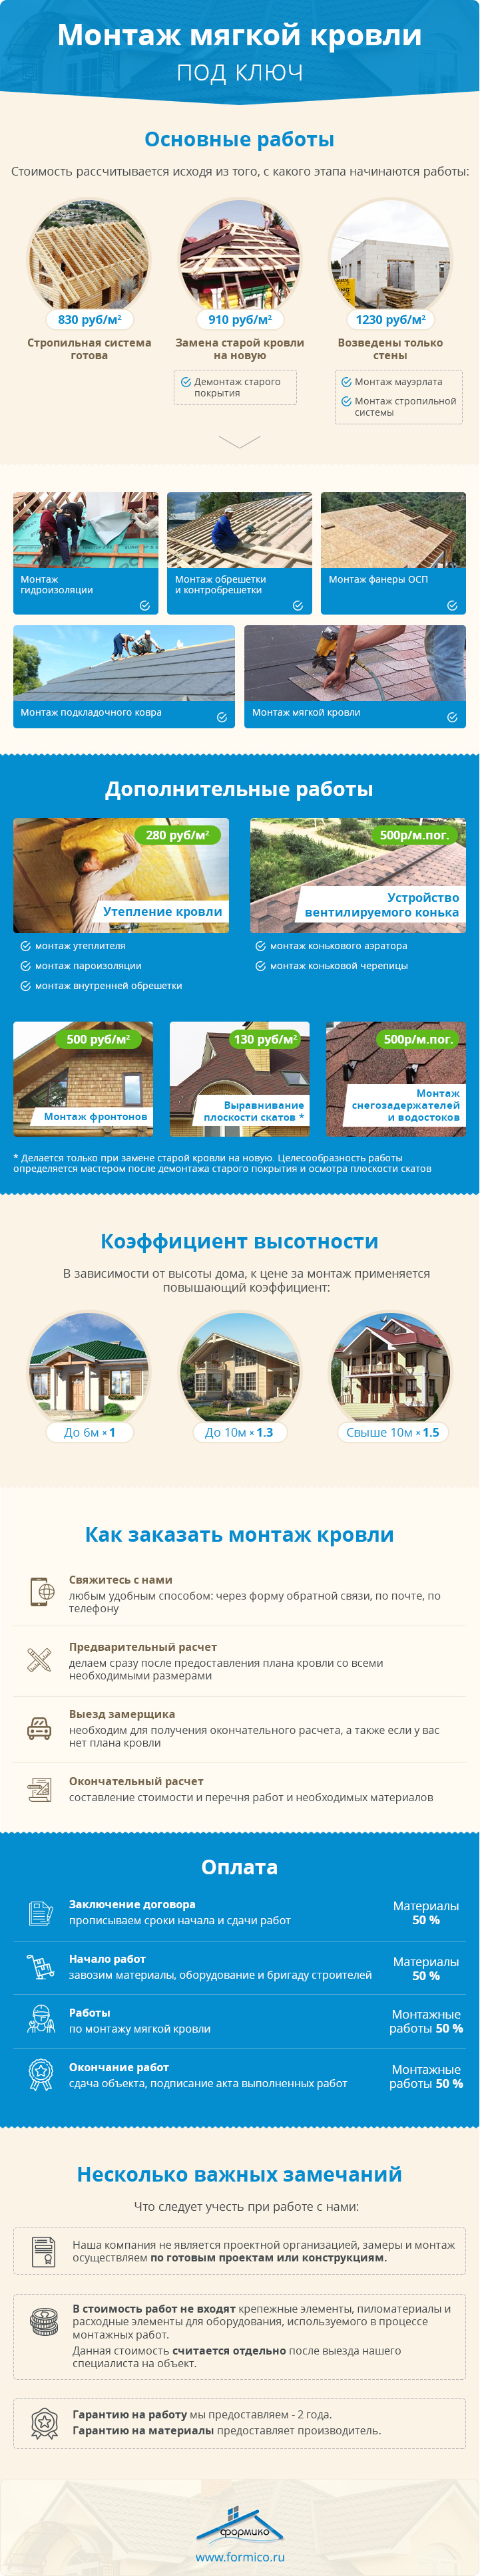 Инфографика монтаж мягкой кровли (гибкой черепицы) в Москве и Области в компании Формико